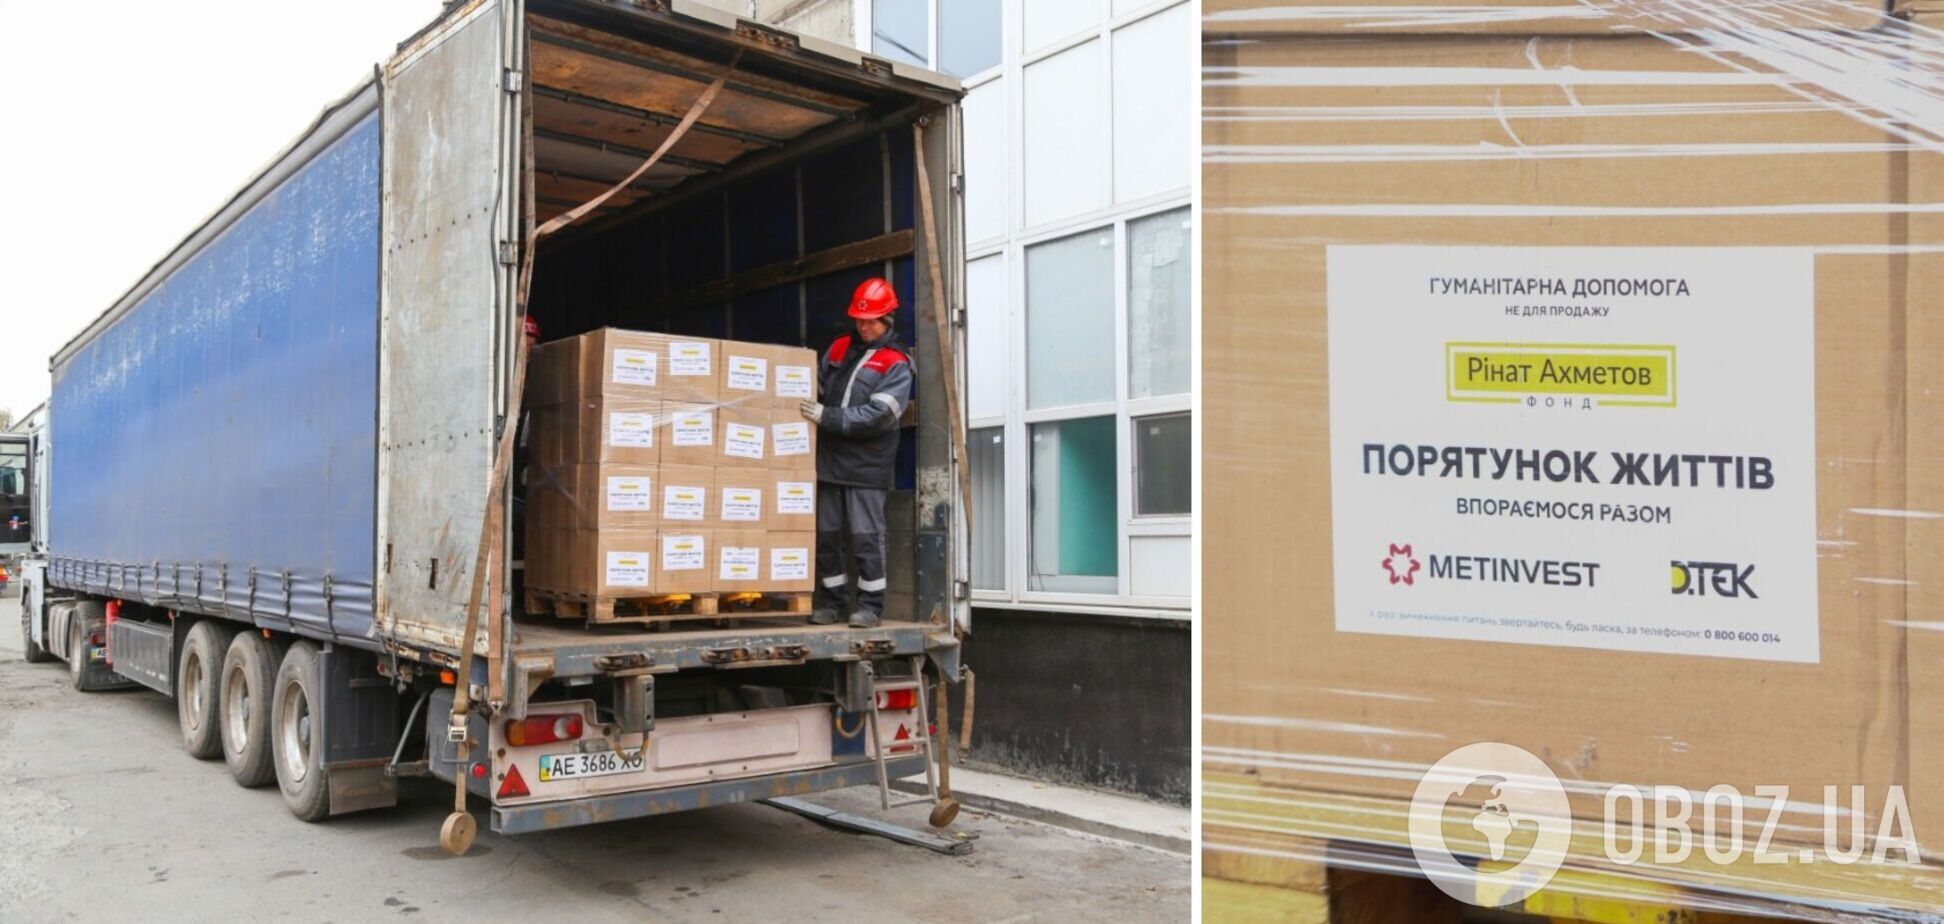 Донетчина получила 5,5 тысячи продуктовых наборов от гумпроекта 'Спасаем жизни'